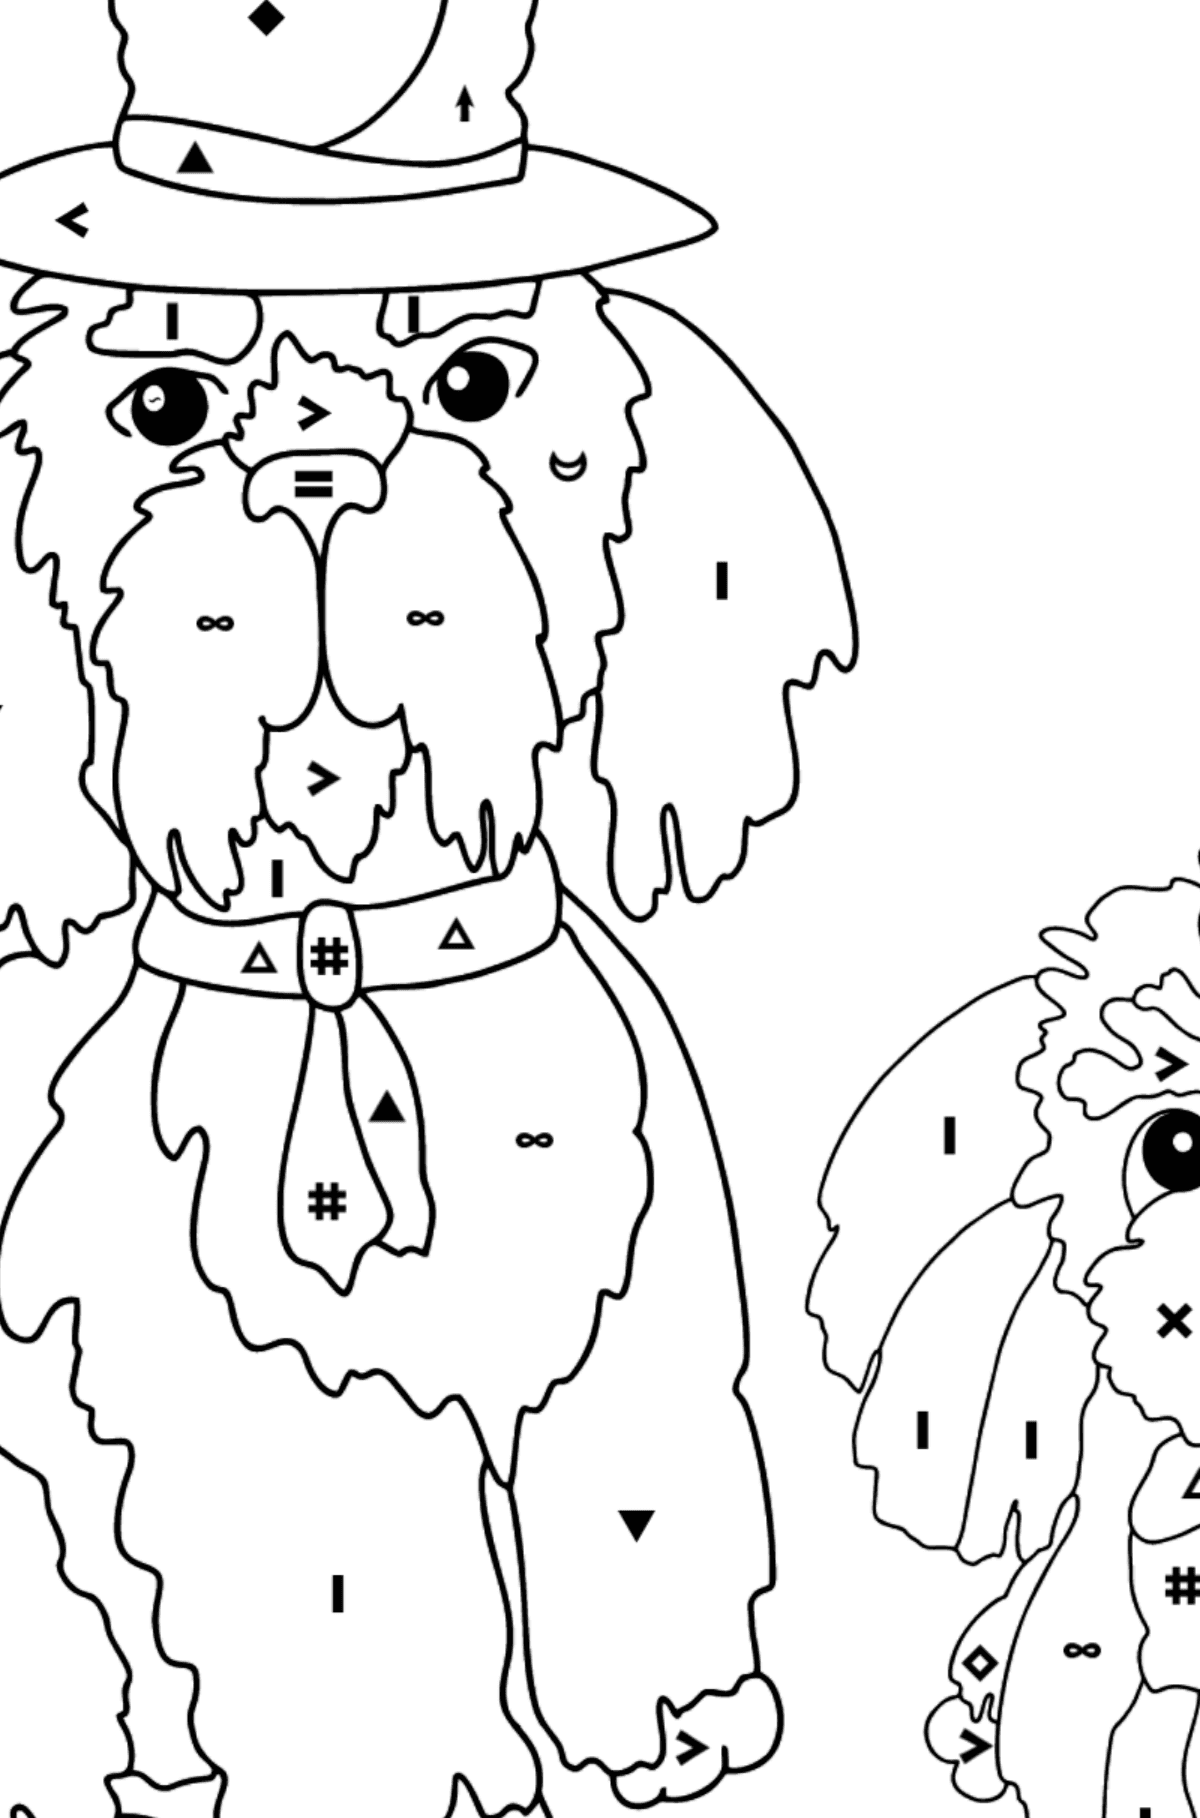 Boyama sayfası iyi köpekler (zor) - Sembollerle Boyama çocuklar için